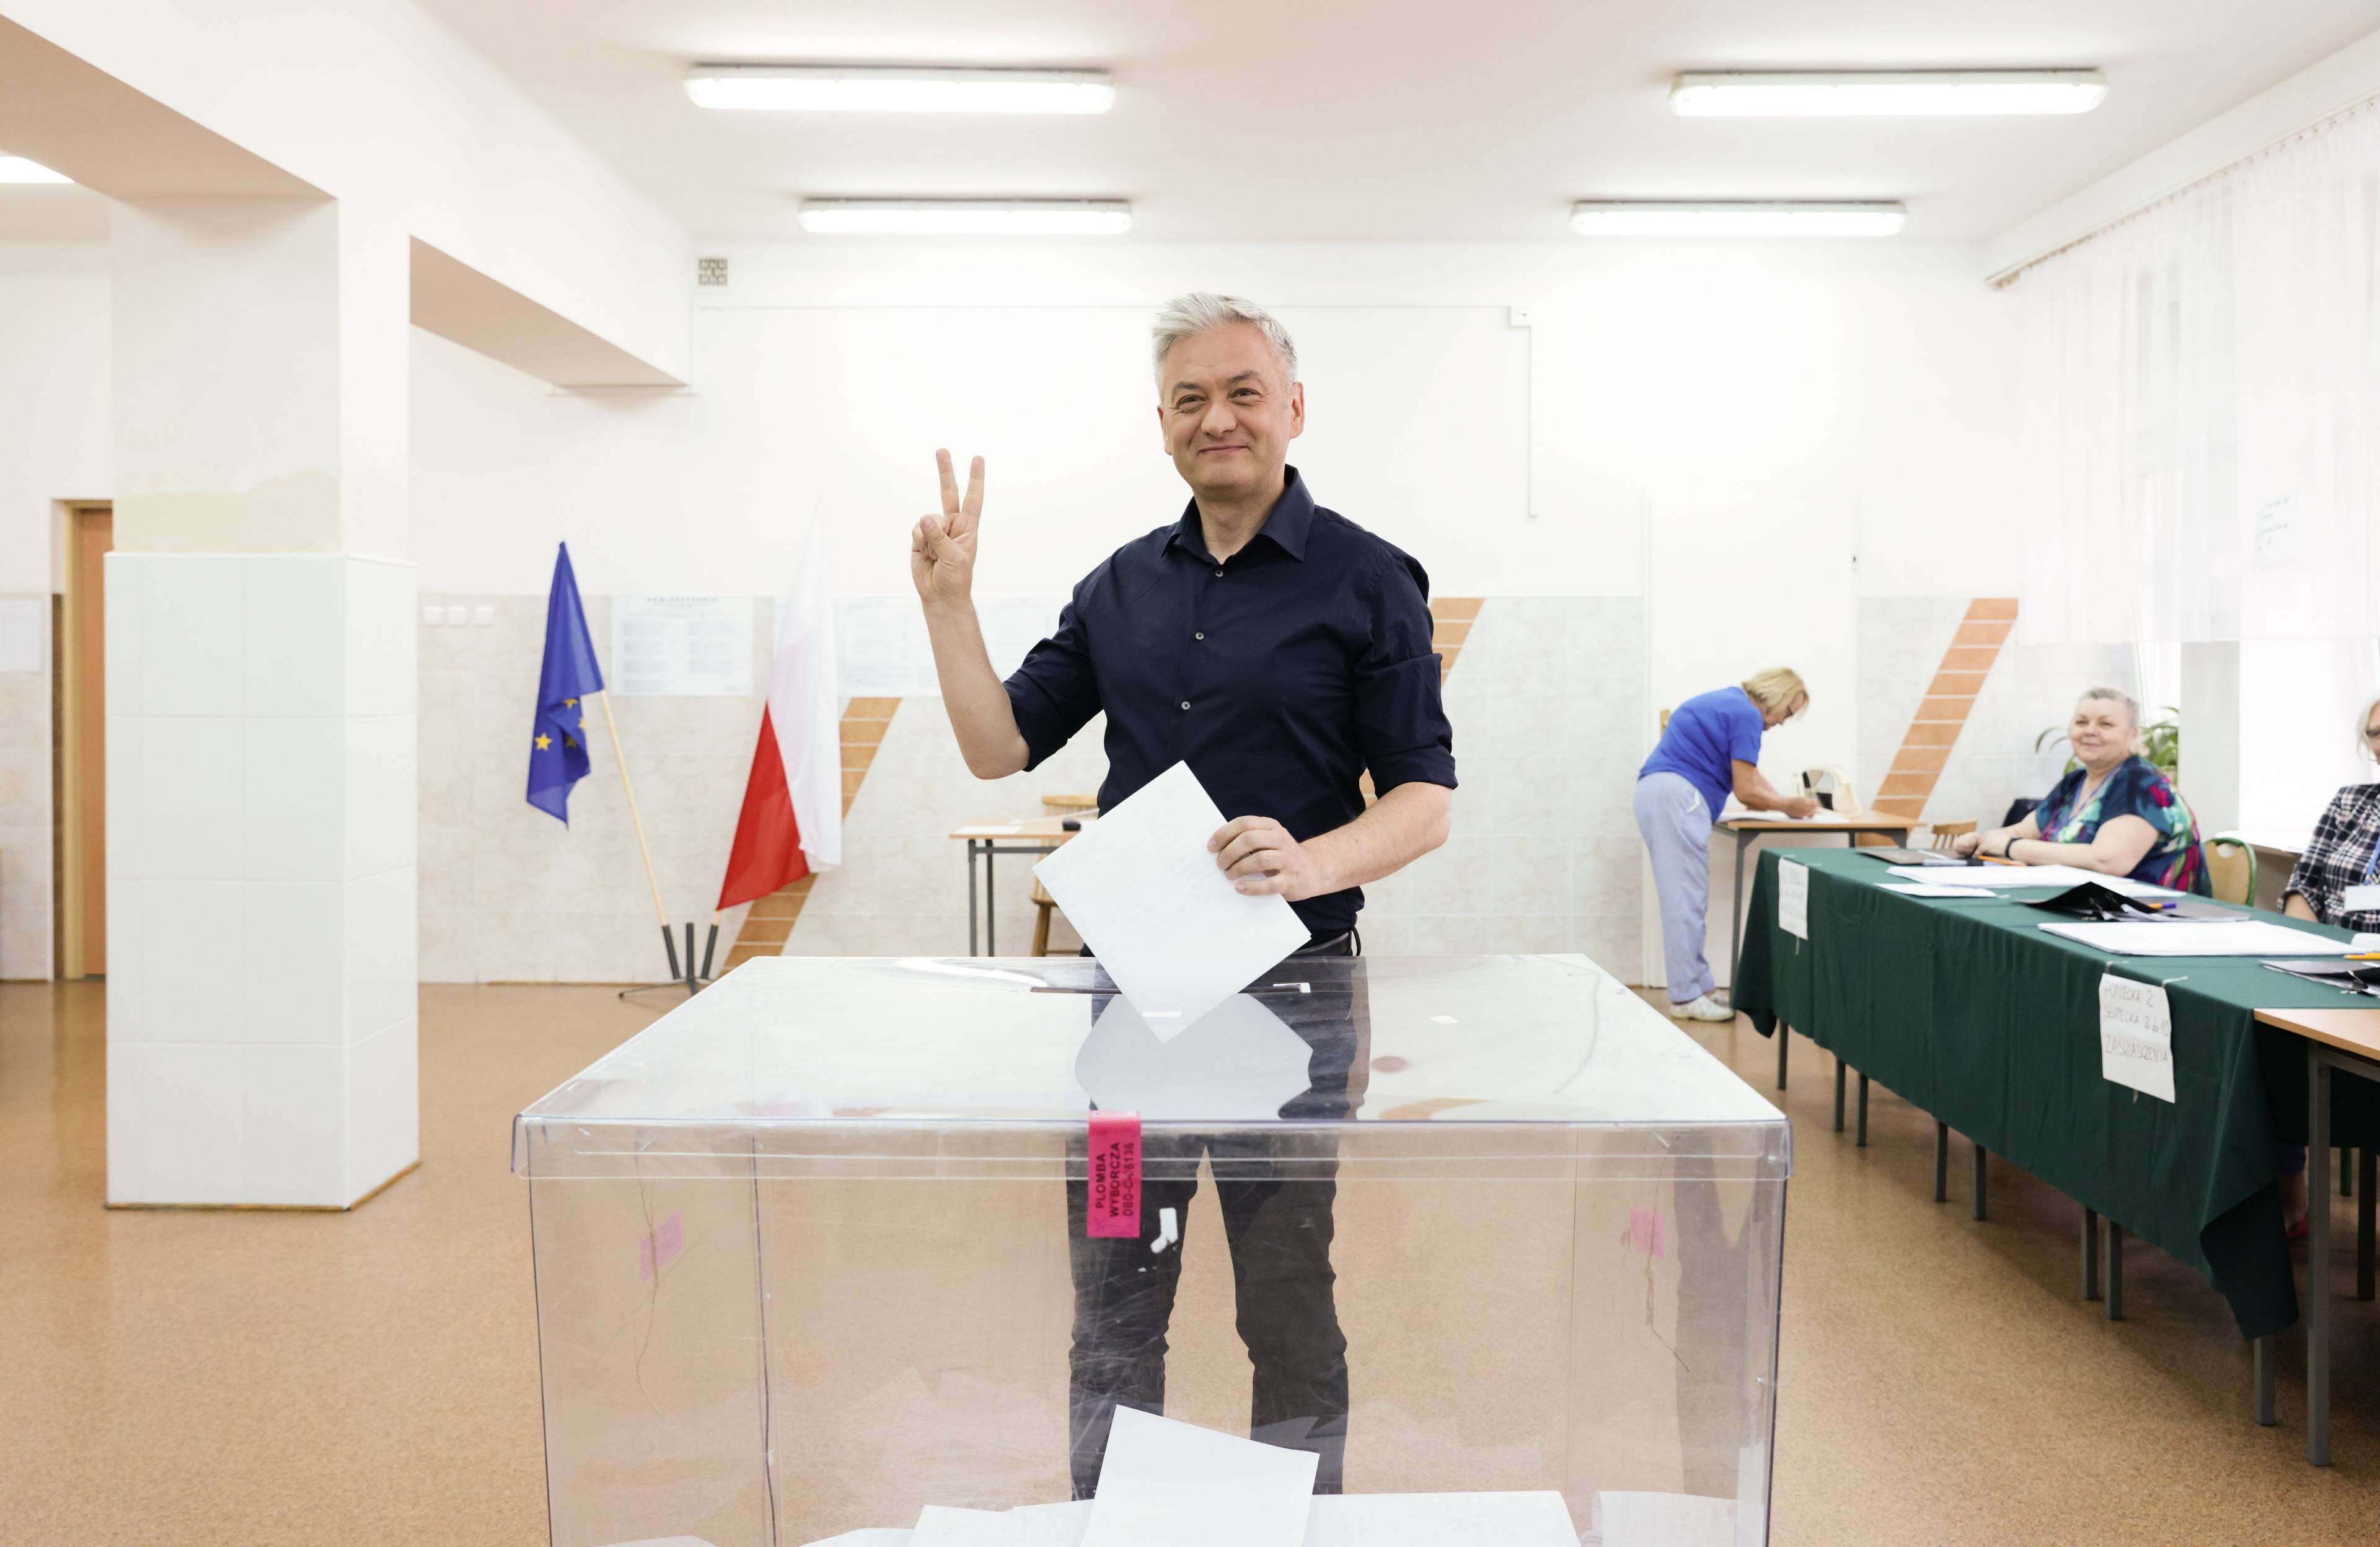 Wybory do Parlamentu Europejskiego w Warszawie